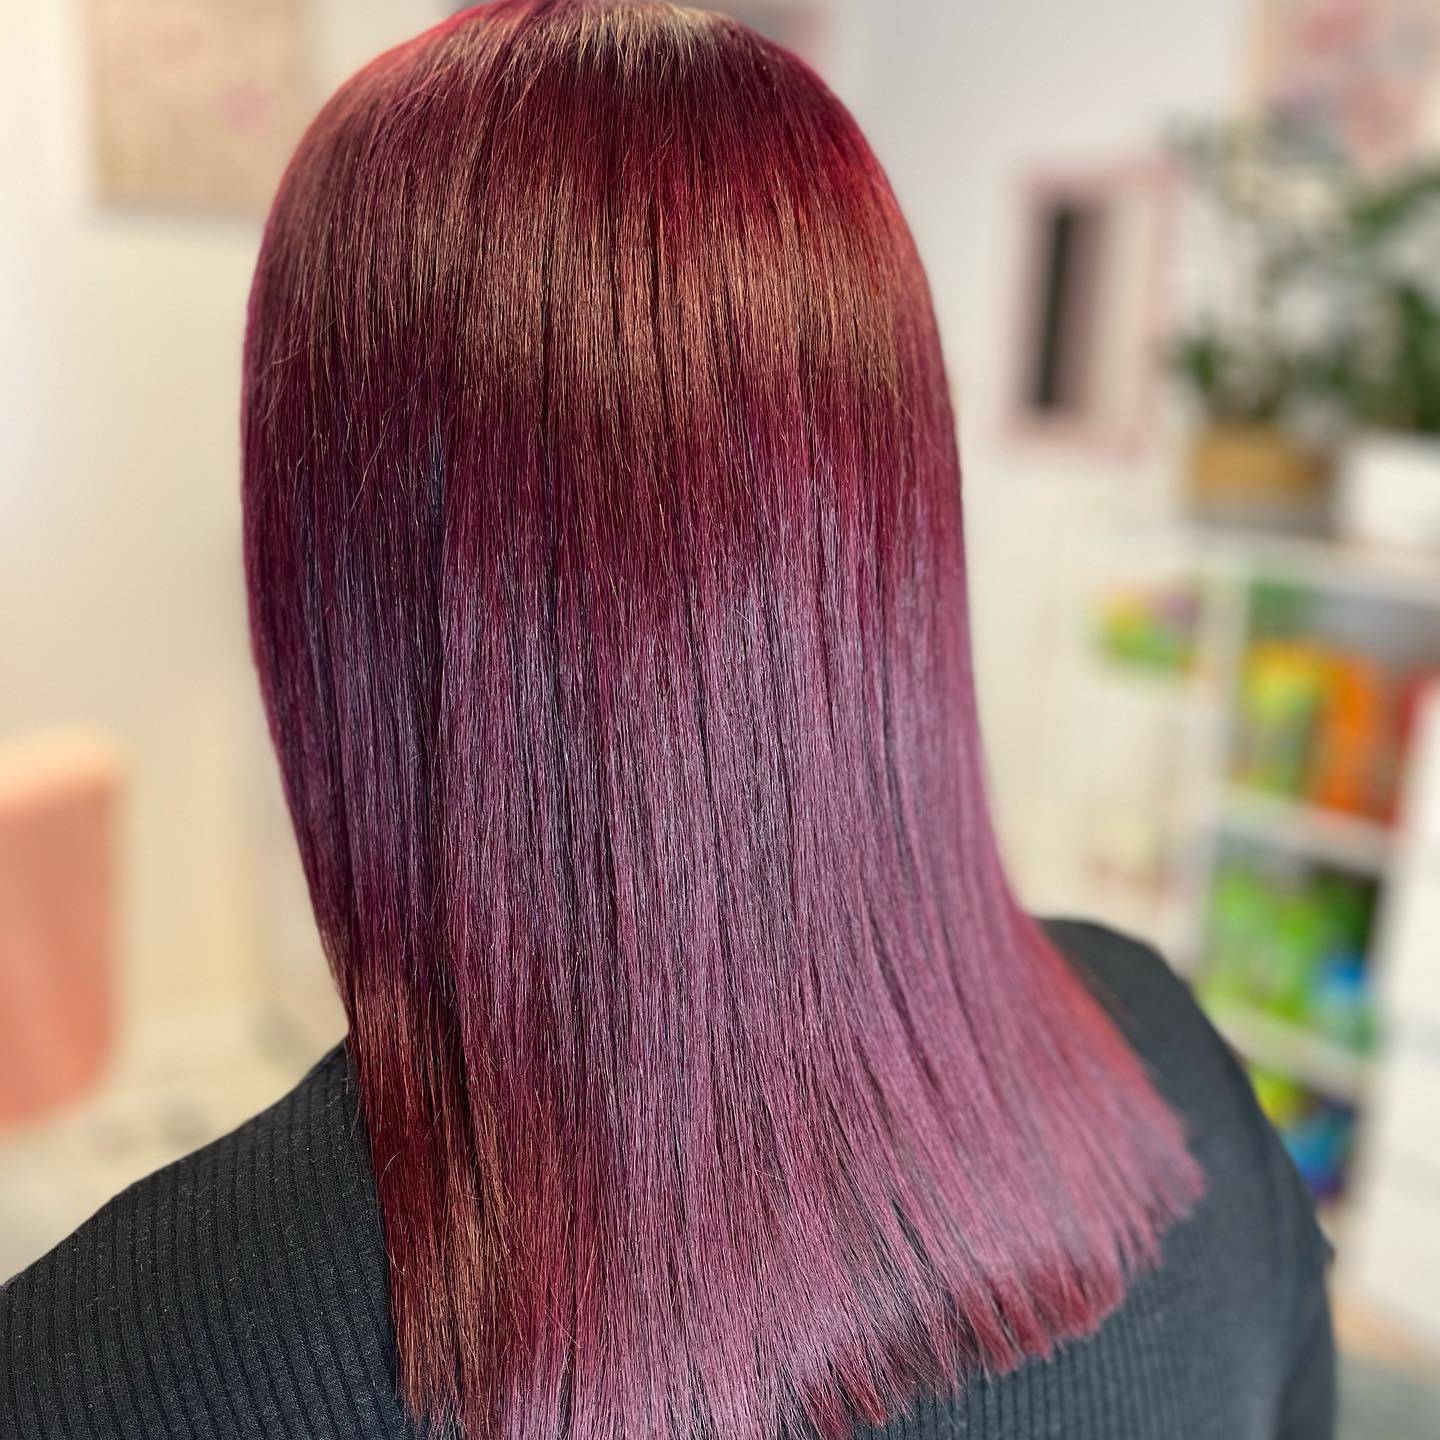 Burgundy hair color 397 burgundy hair color | burgundy hair color for women | burgundy hair color highlights Burgundy Hair Color